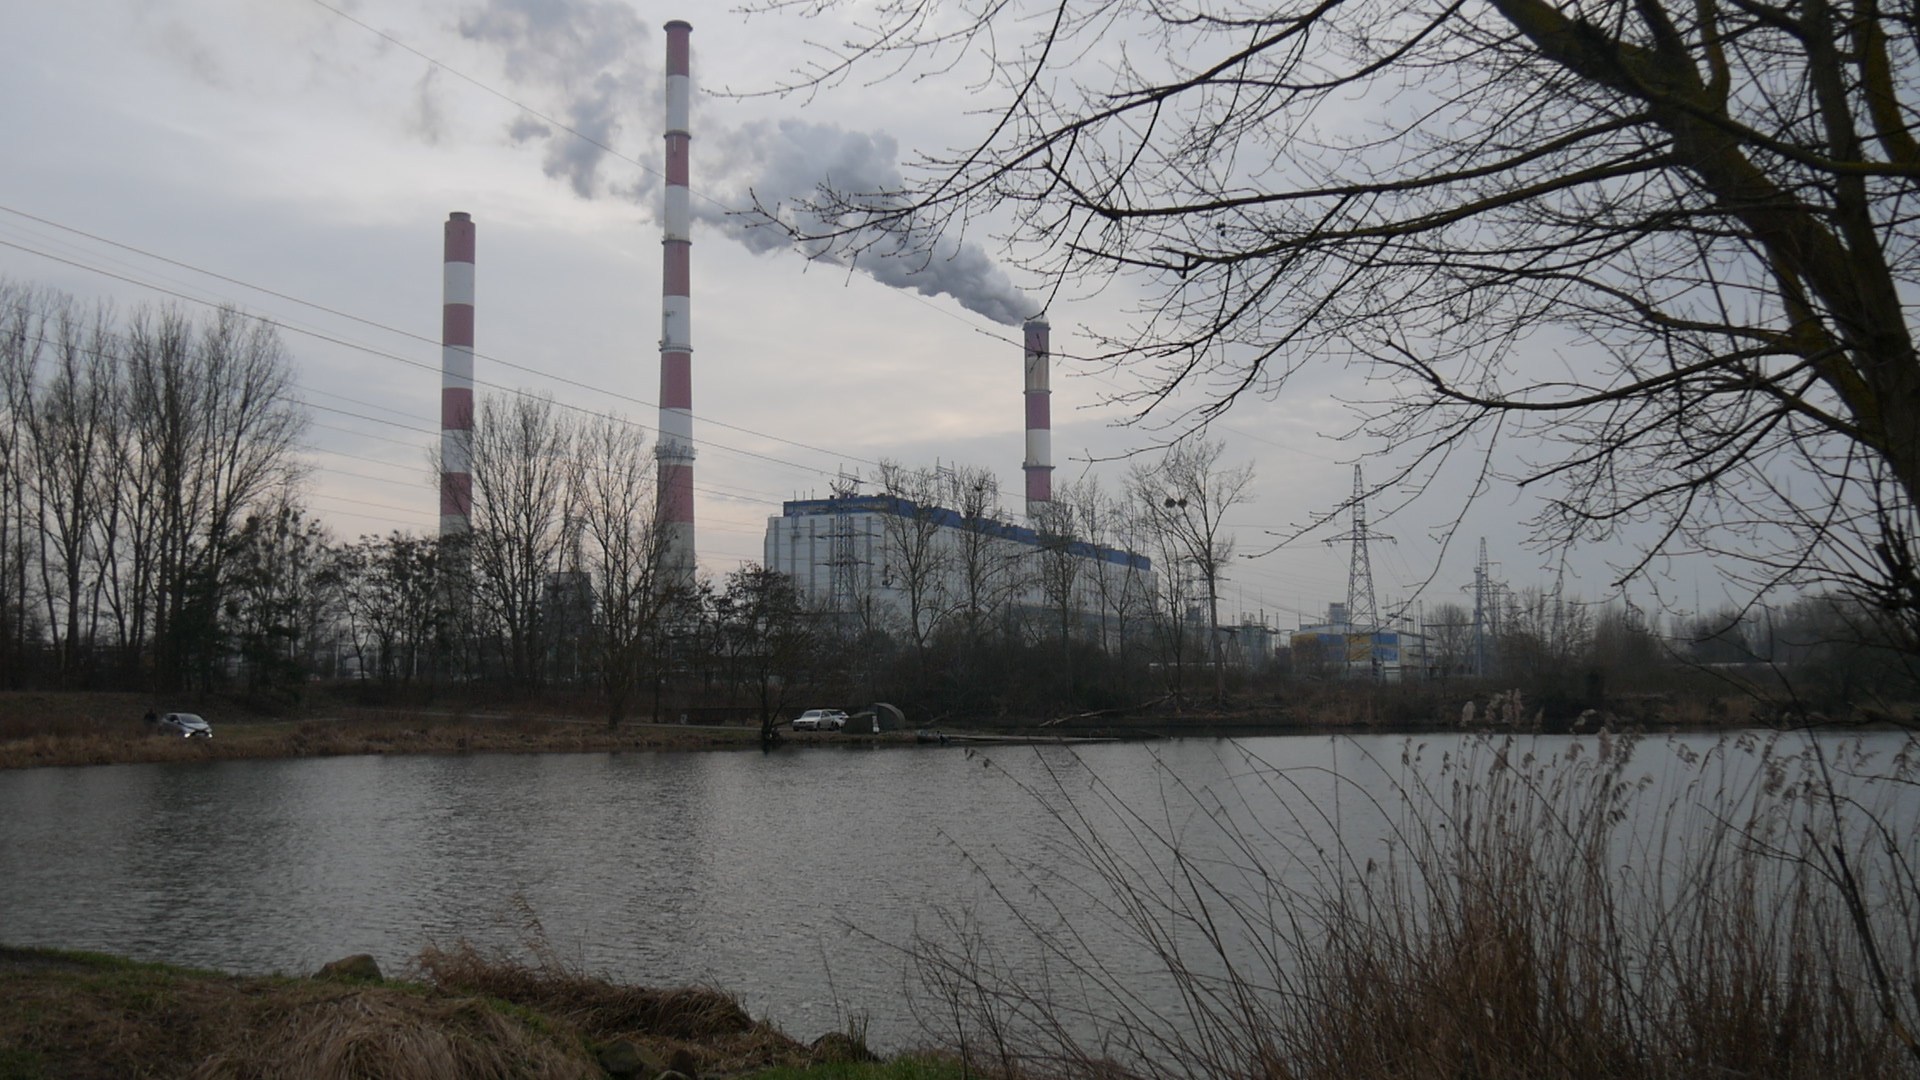 Autour du fleuve de l’Oder en Pologne, des poissons meurent et des hommes luttent